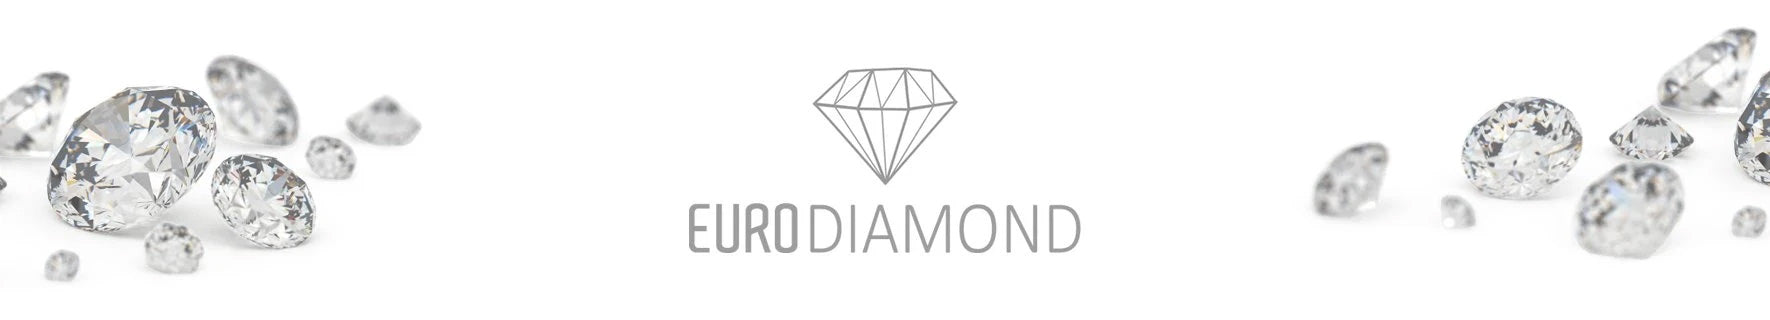 Eurodiamond